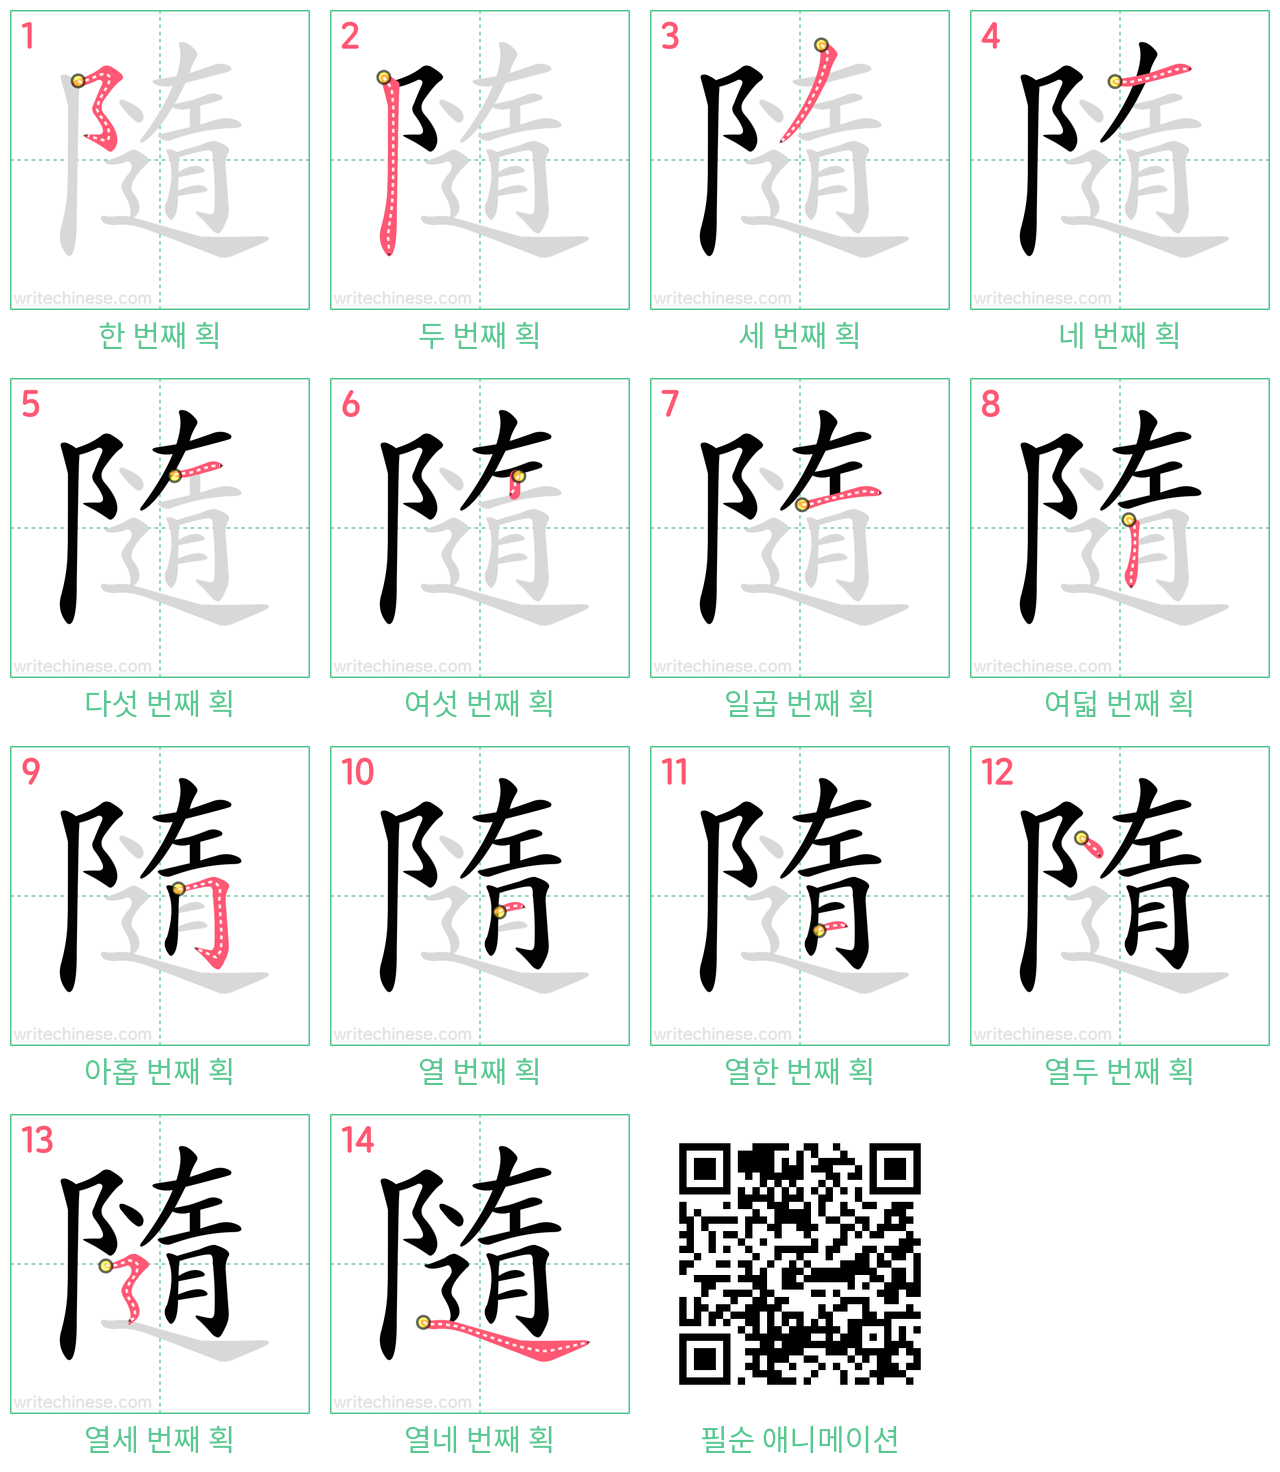 隨 step-by-step stroke order diagrams